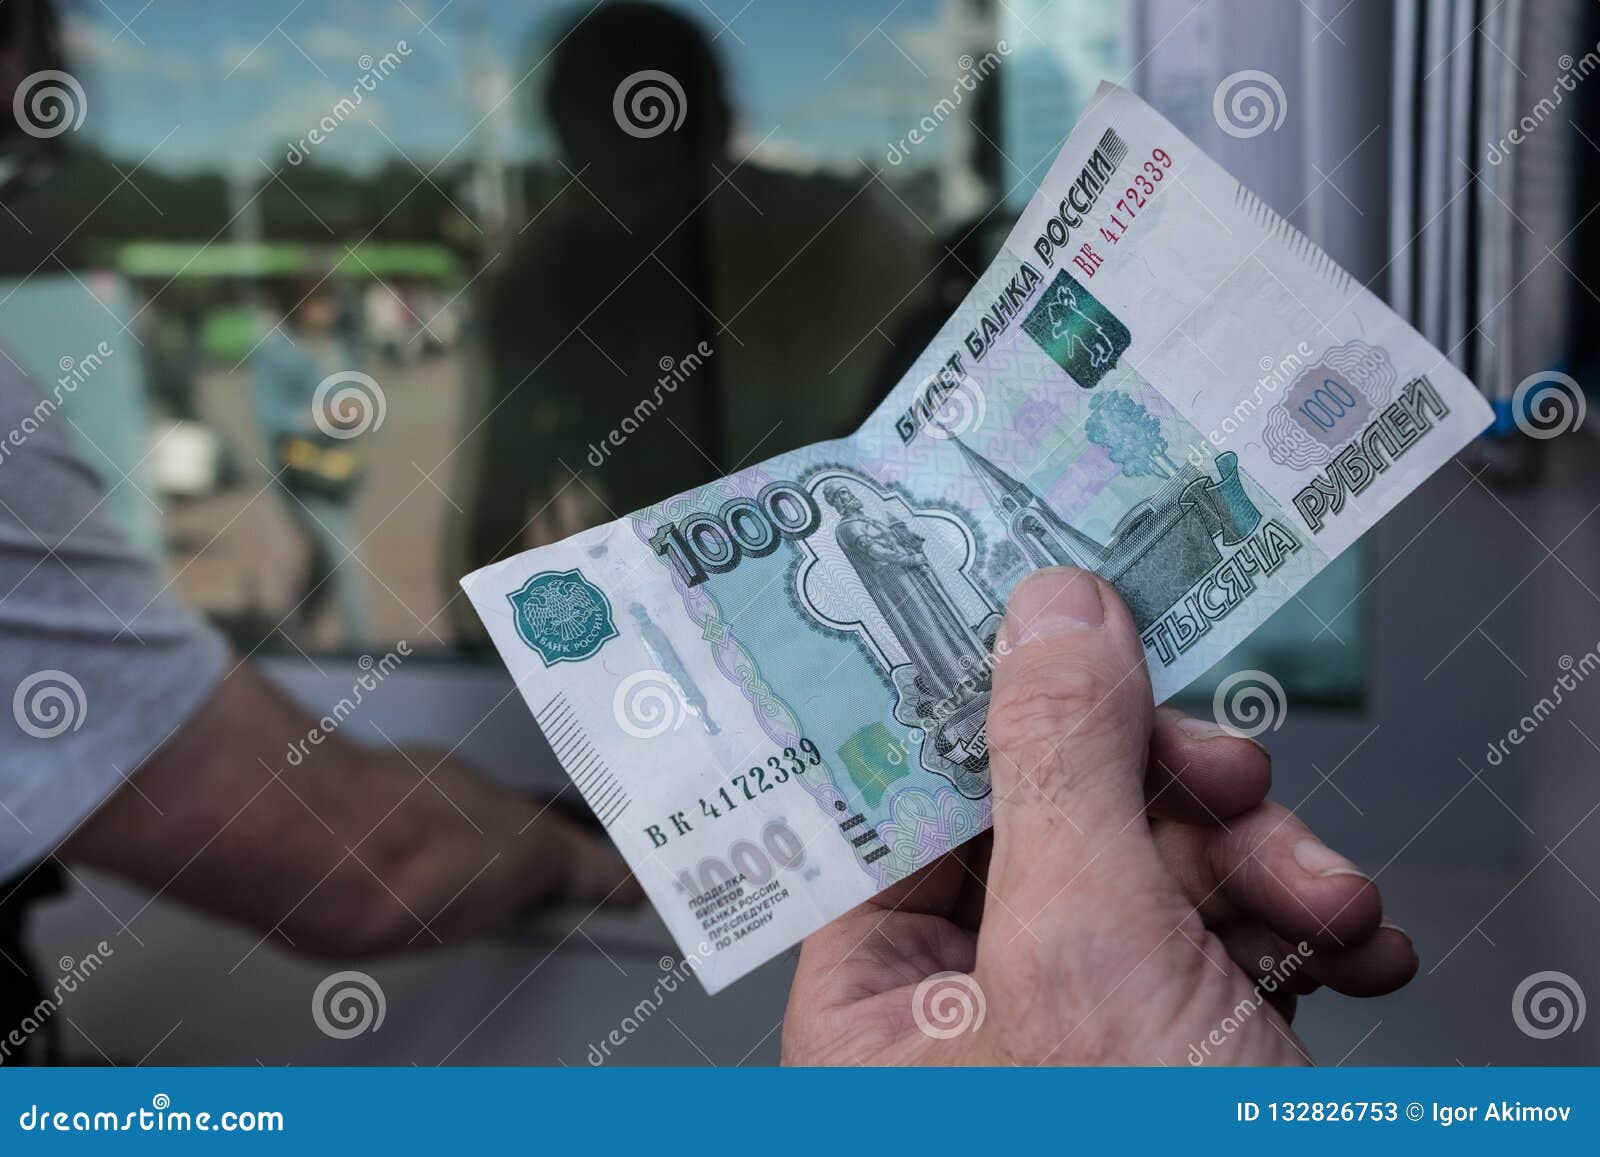 Обмен валюты витебского вокзала курс обмена валют в дмитрове на сегодня